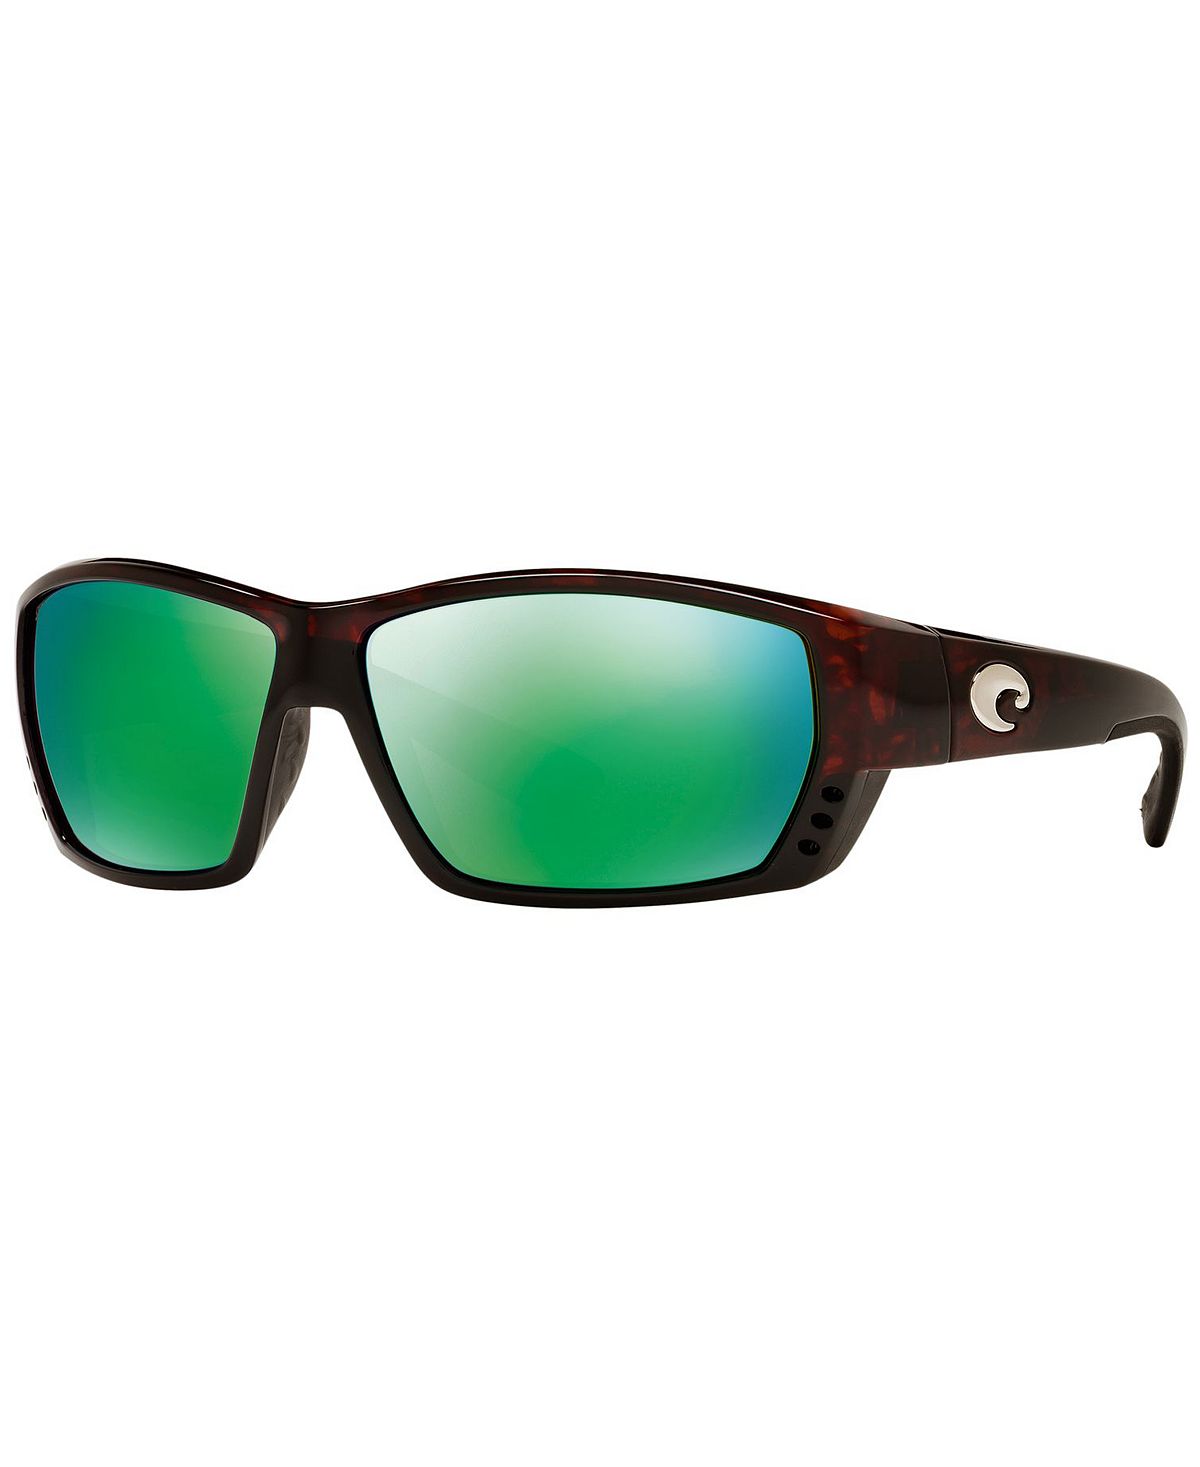 Поляризованные солнцезащитные очки, TUNA ALLEY Costa Del Mar union 9x20 5x112 d66 45 et38 gun metallic mirror face